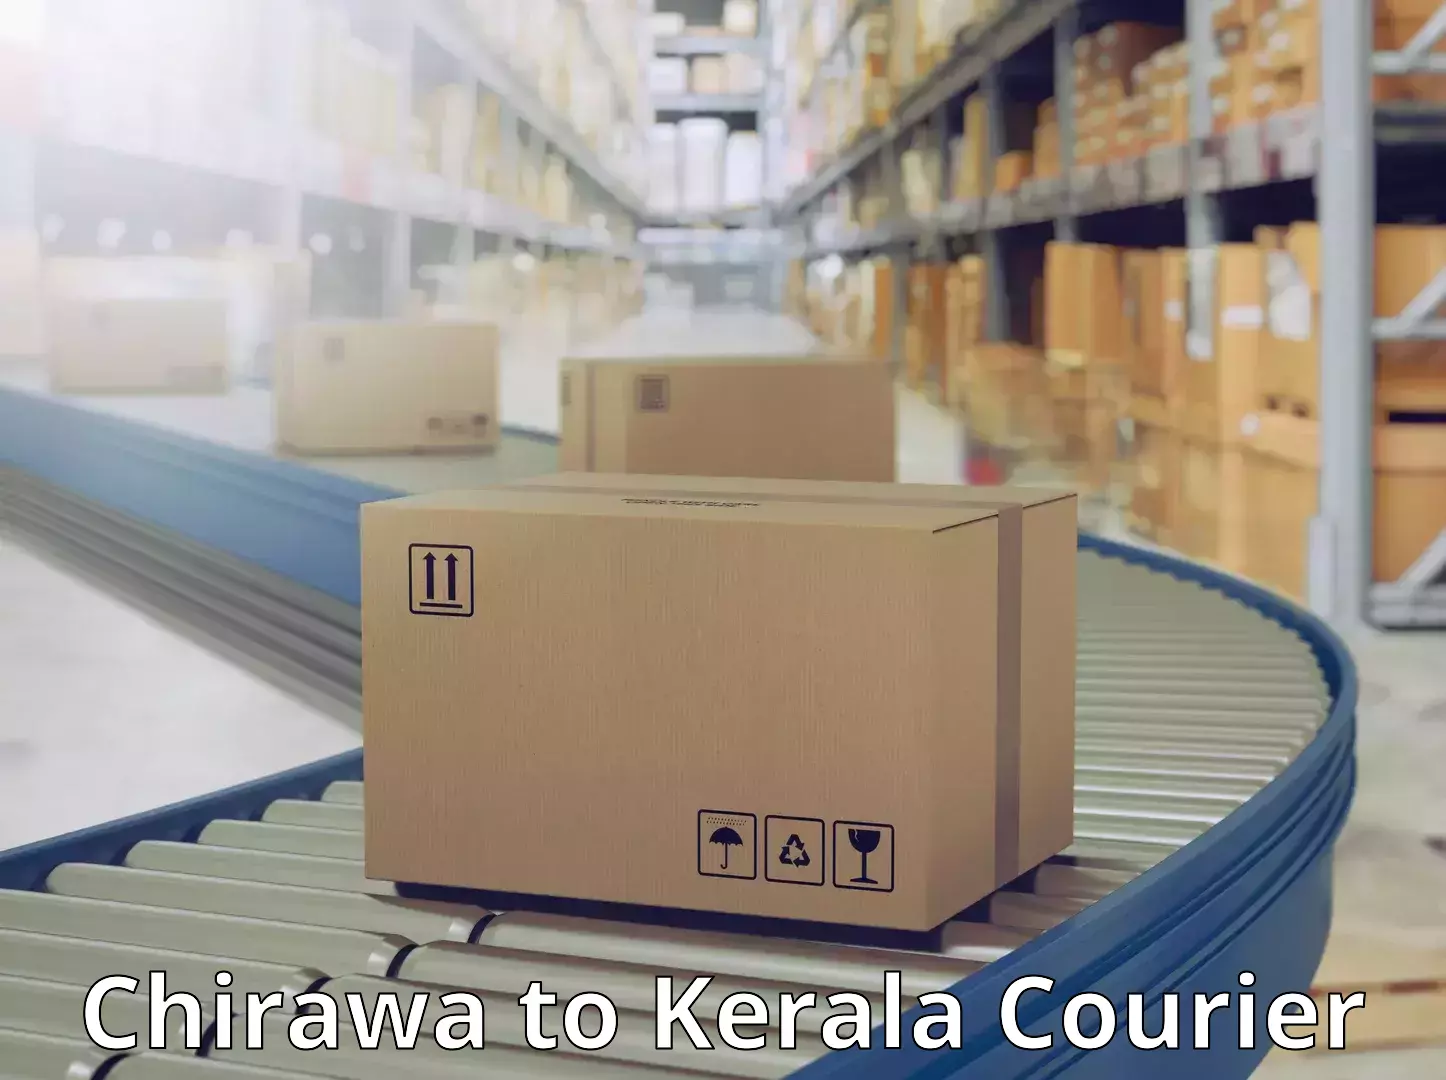 State-of-the-art courier technology Chirawa to Panayathamparamba